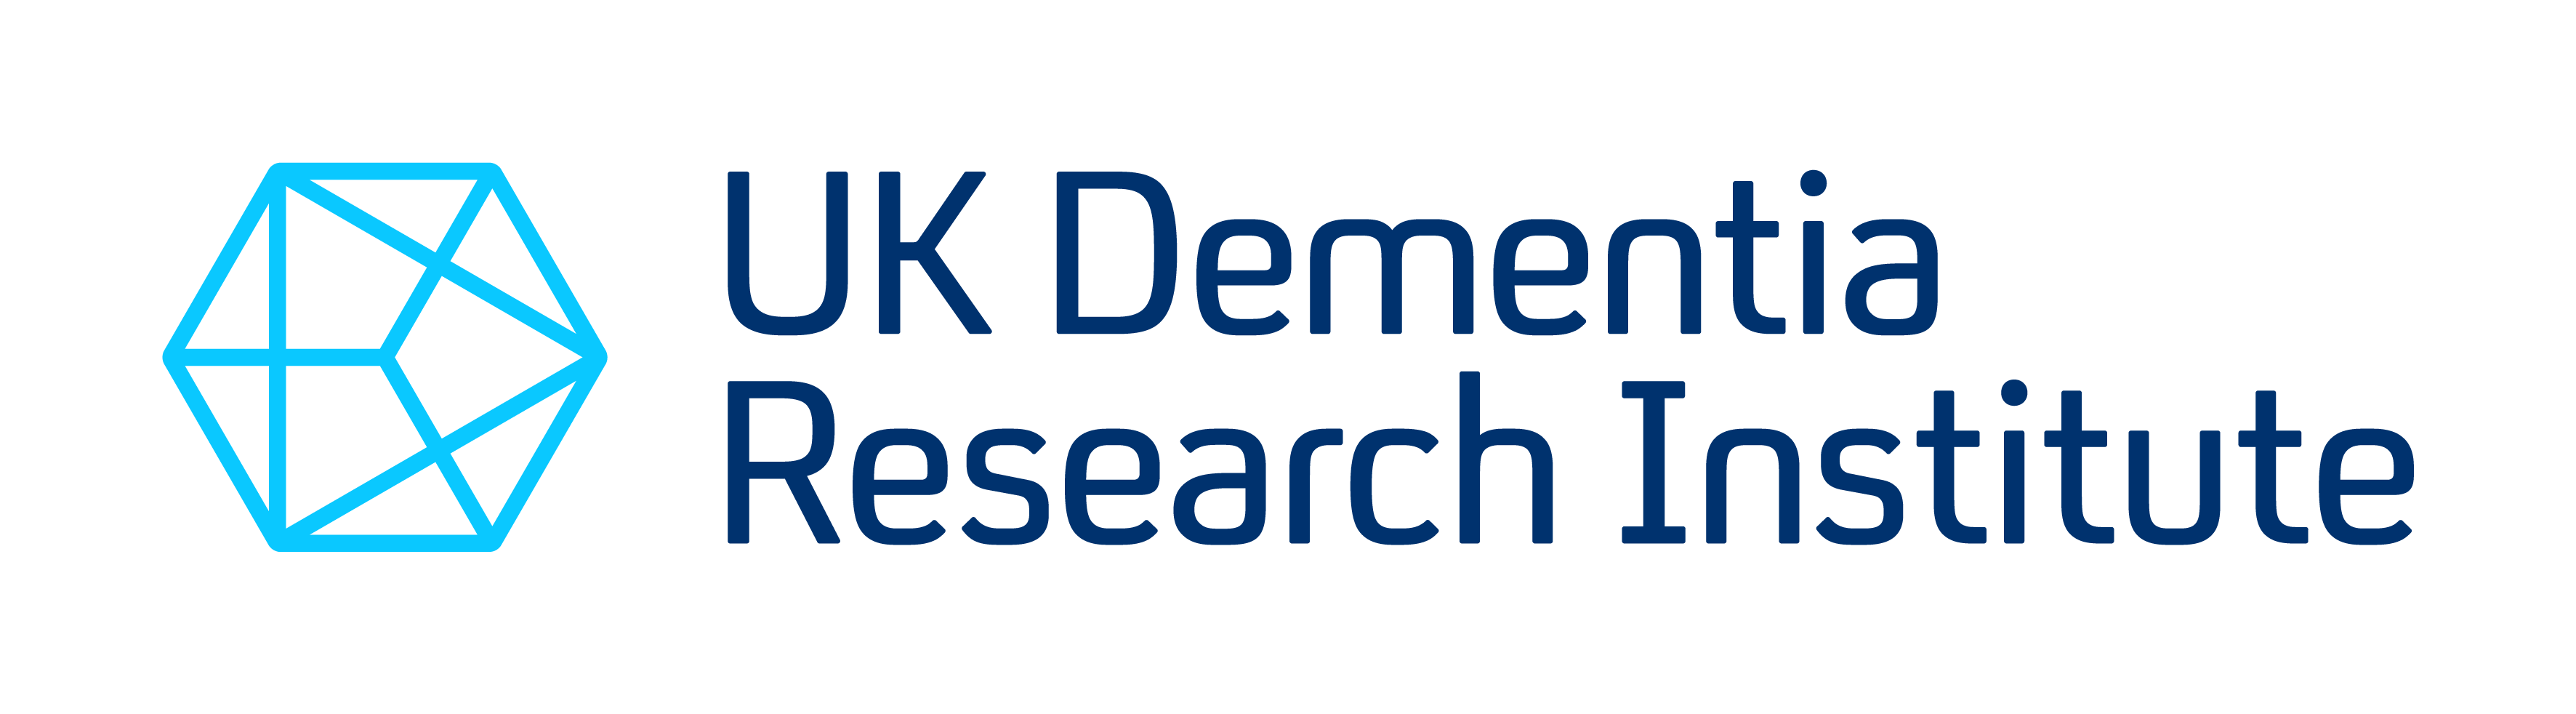 UK Dementia Research Institute_LOGO_RGB (1).png